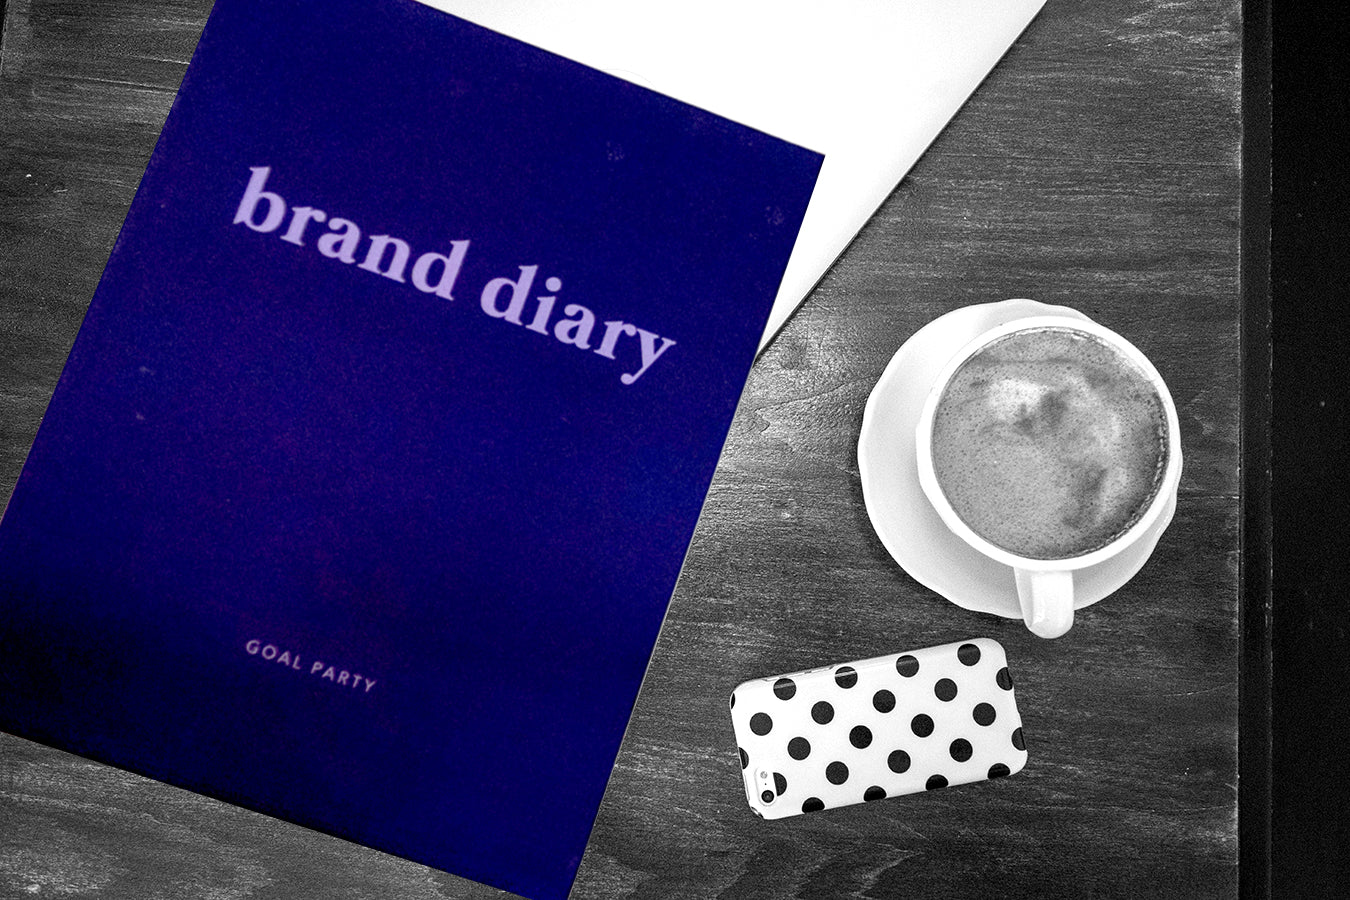 Brand Diary